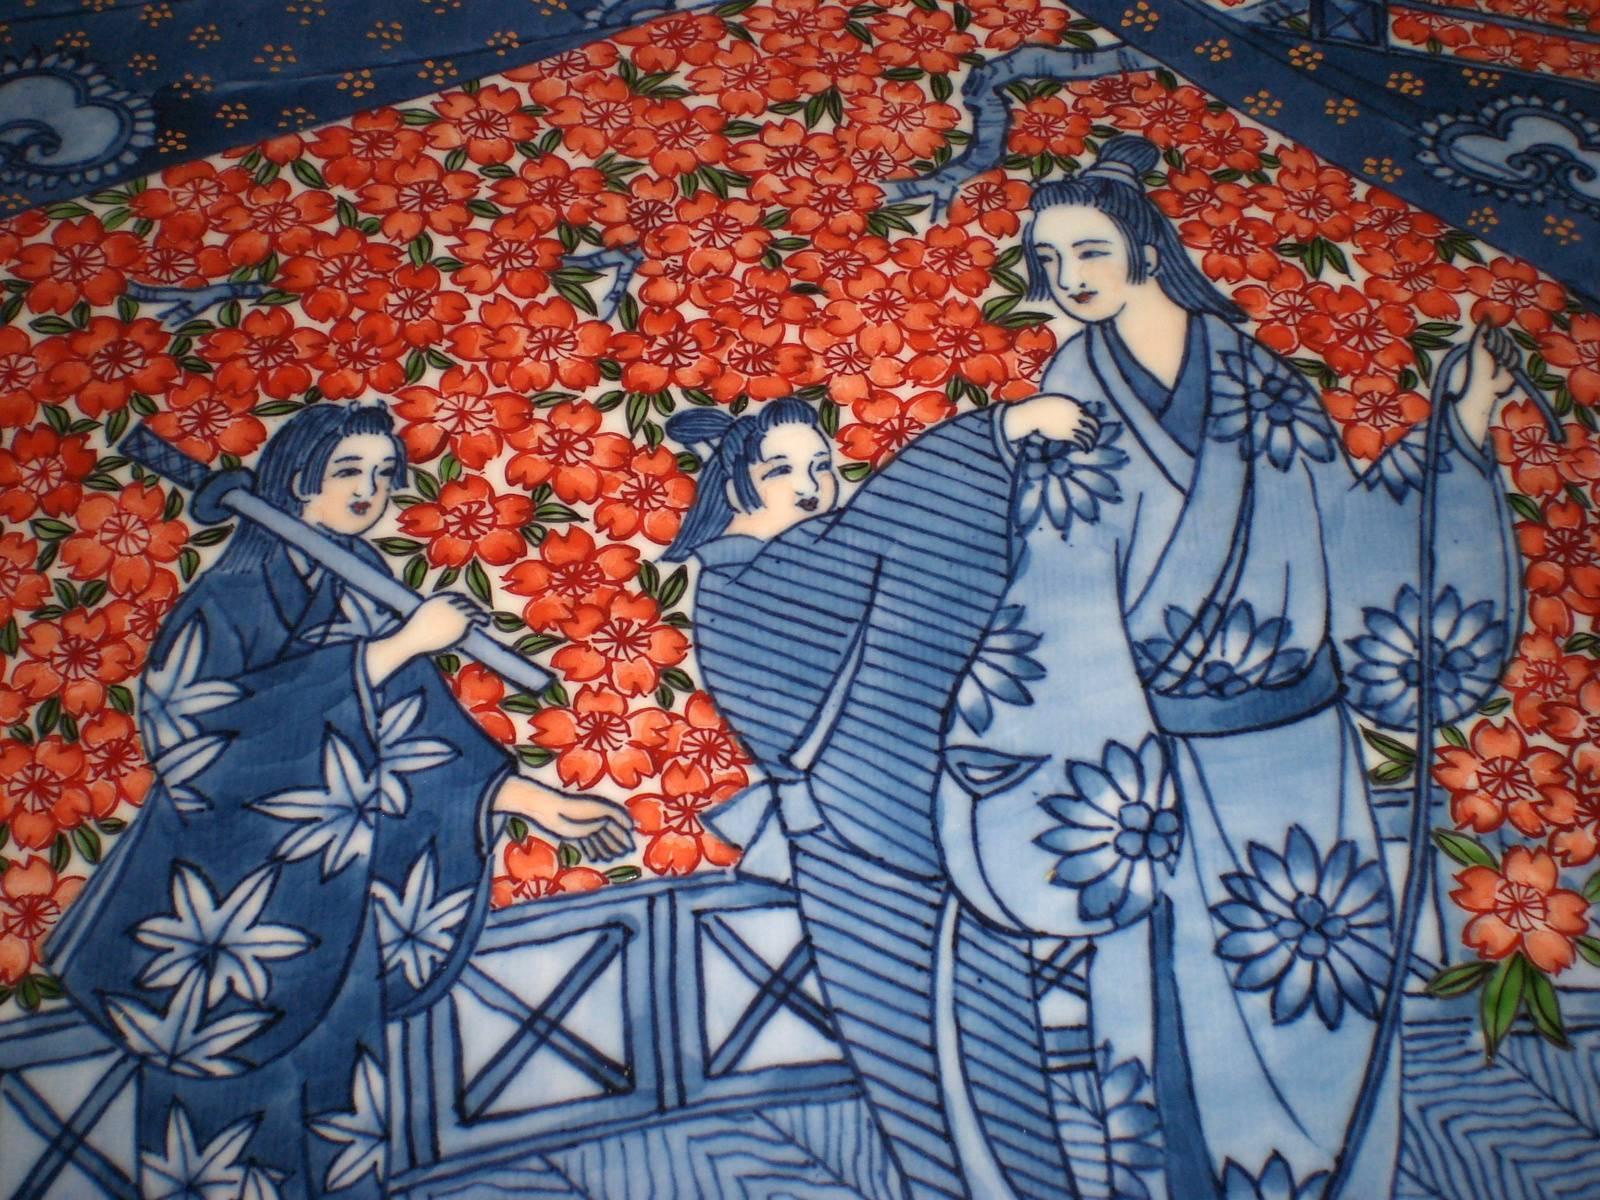 Dieses exquisite zeitgenössische dekorative japanische Porzellan-Ladegerät in Rot und Blau ist ein signiertes Meisterwerk des Porzellanmeisters aus der Region Imari Arita auf der südlichen Insel Kyushu (1931-2009). Das handbemalte Ladegerät zeigt